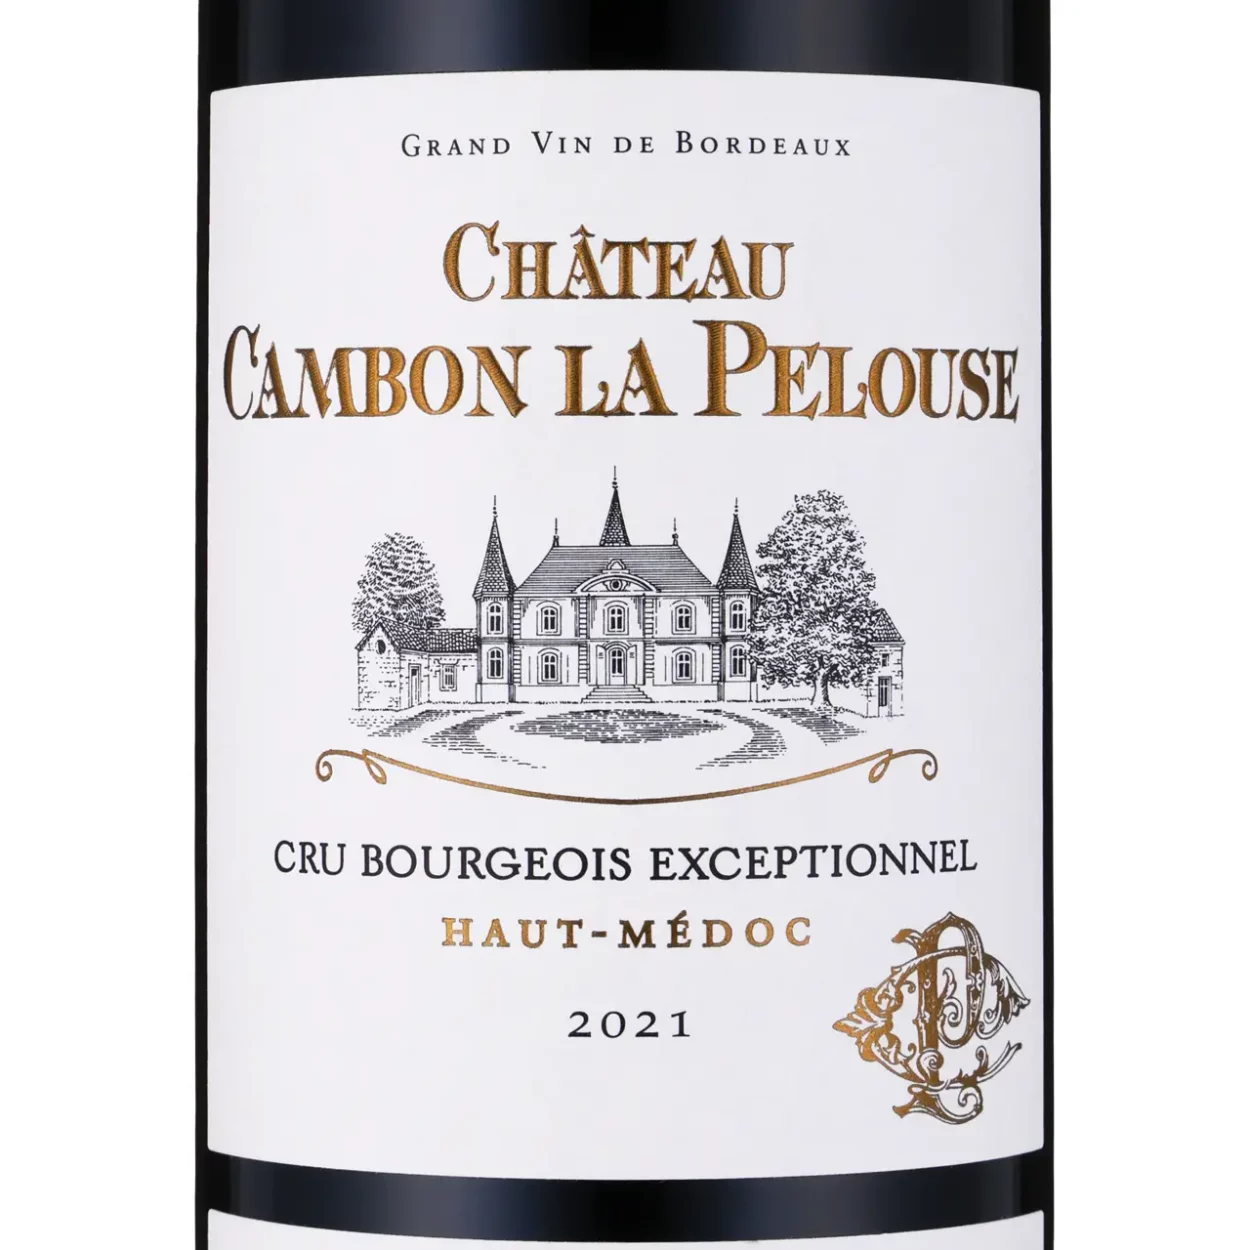 Château Cambon La Pelouse Cru Bourgeois Exceptionnel 2021